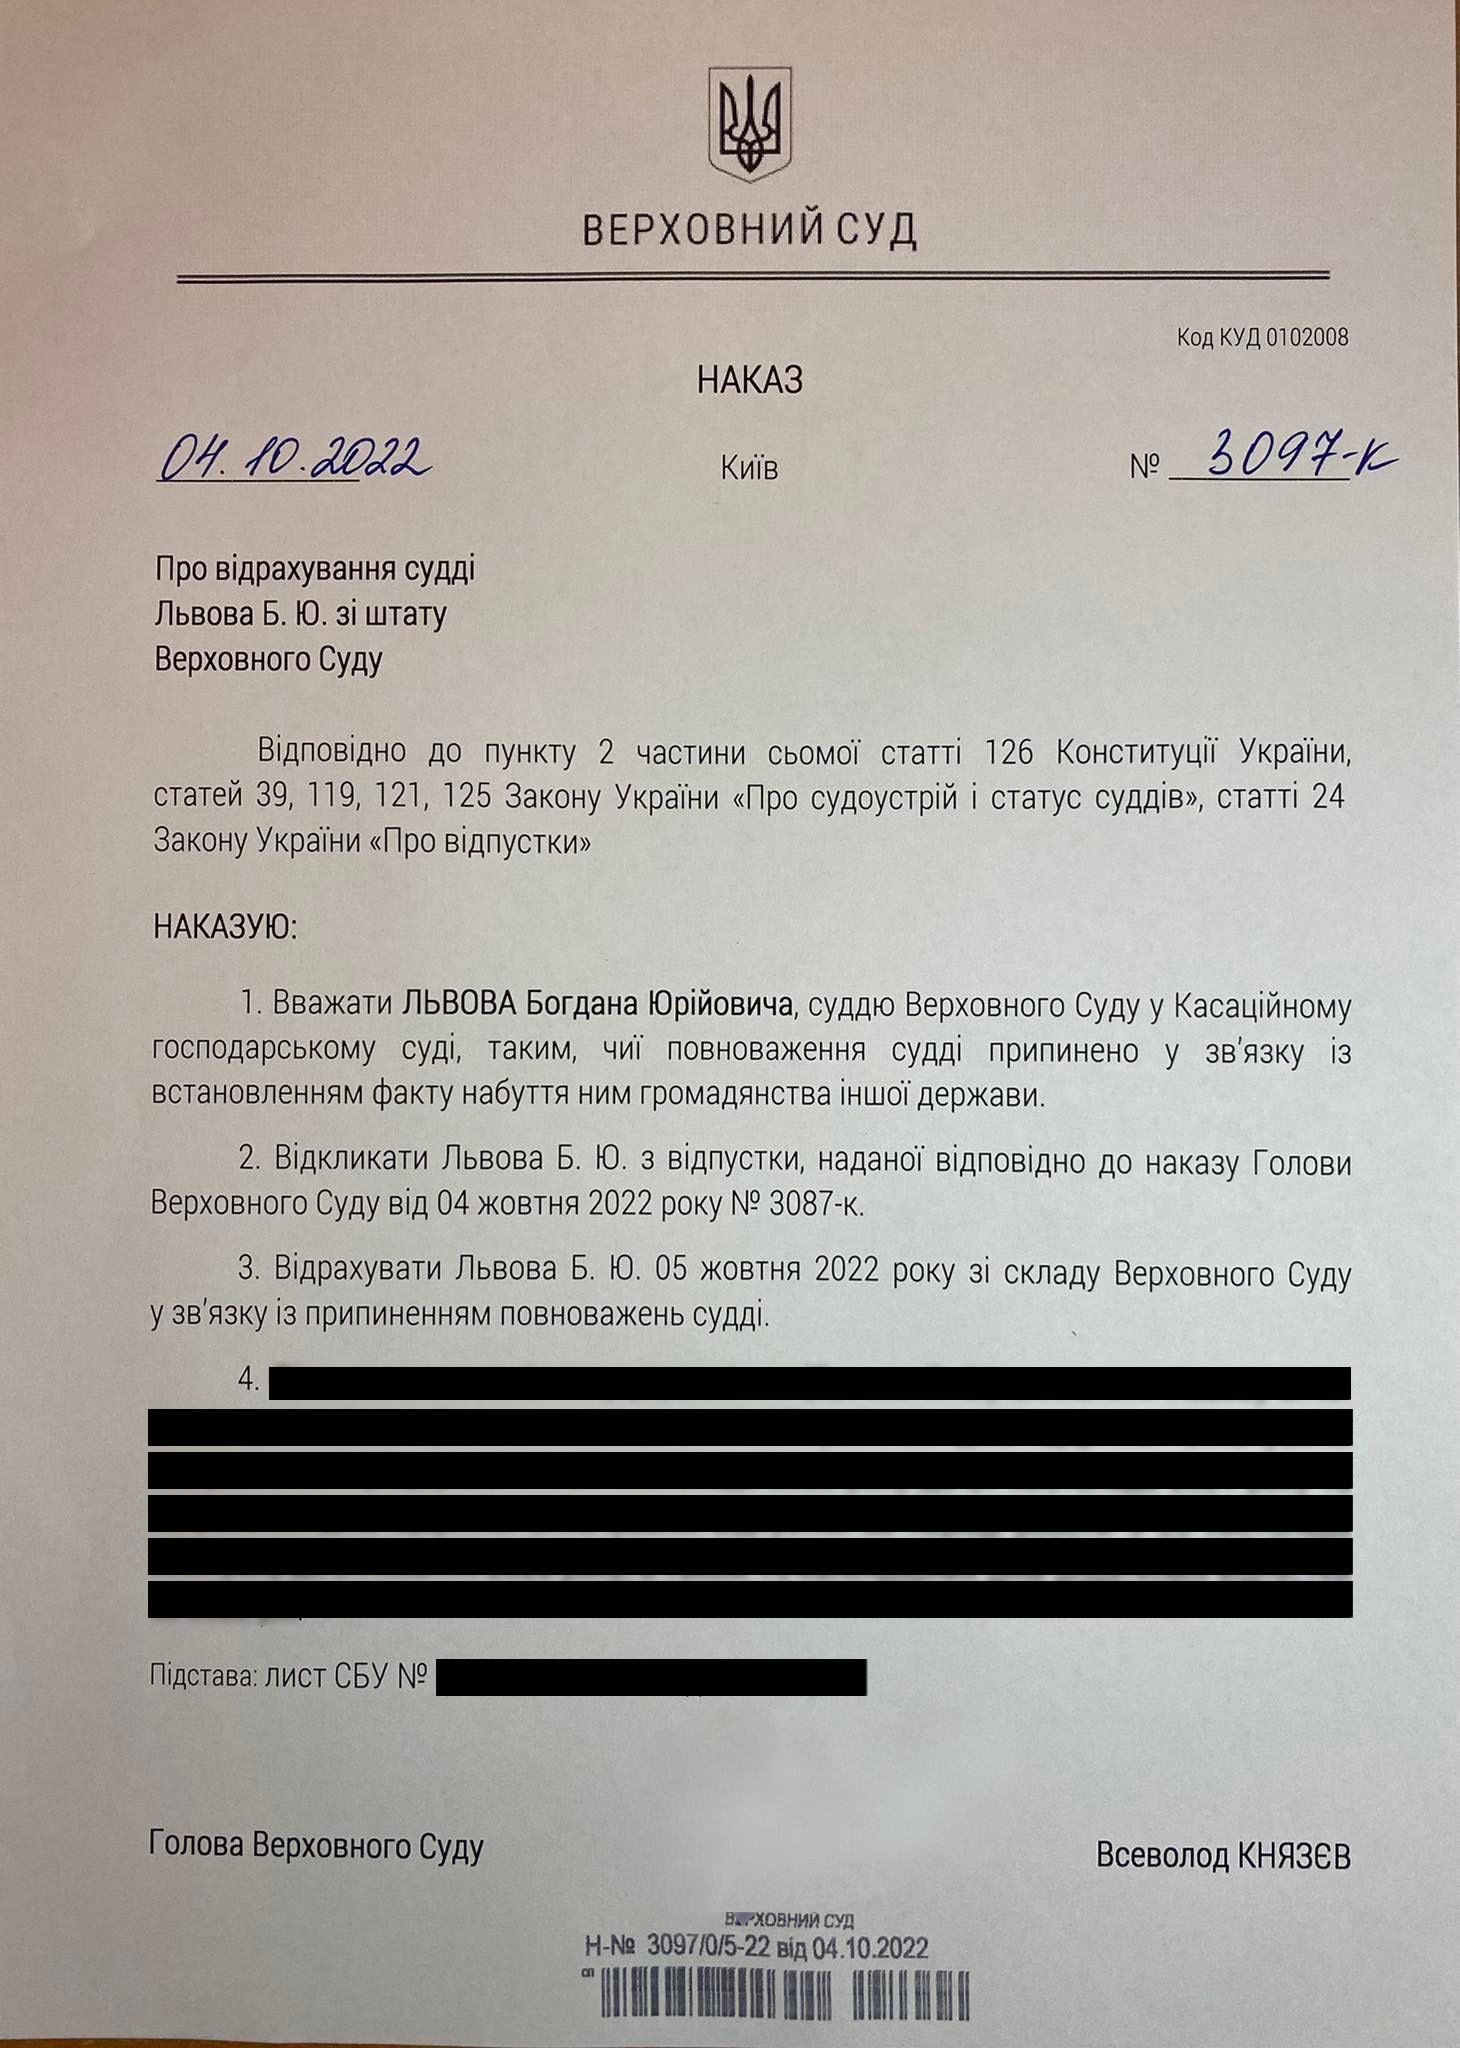 Суддю з російським паспортом Львова звільнено: офіційно фото 1